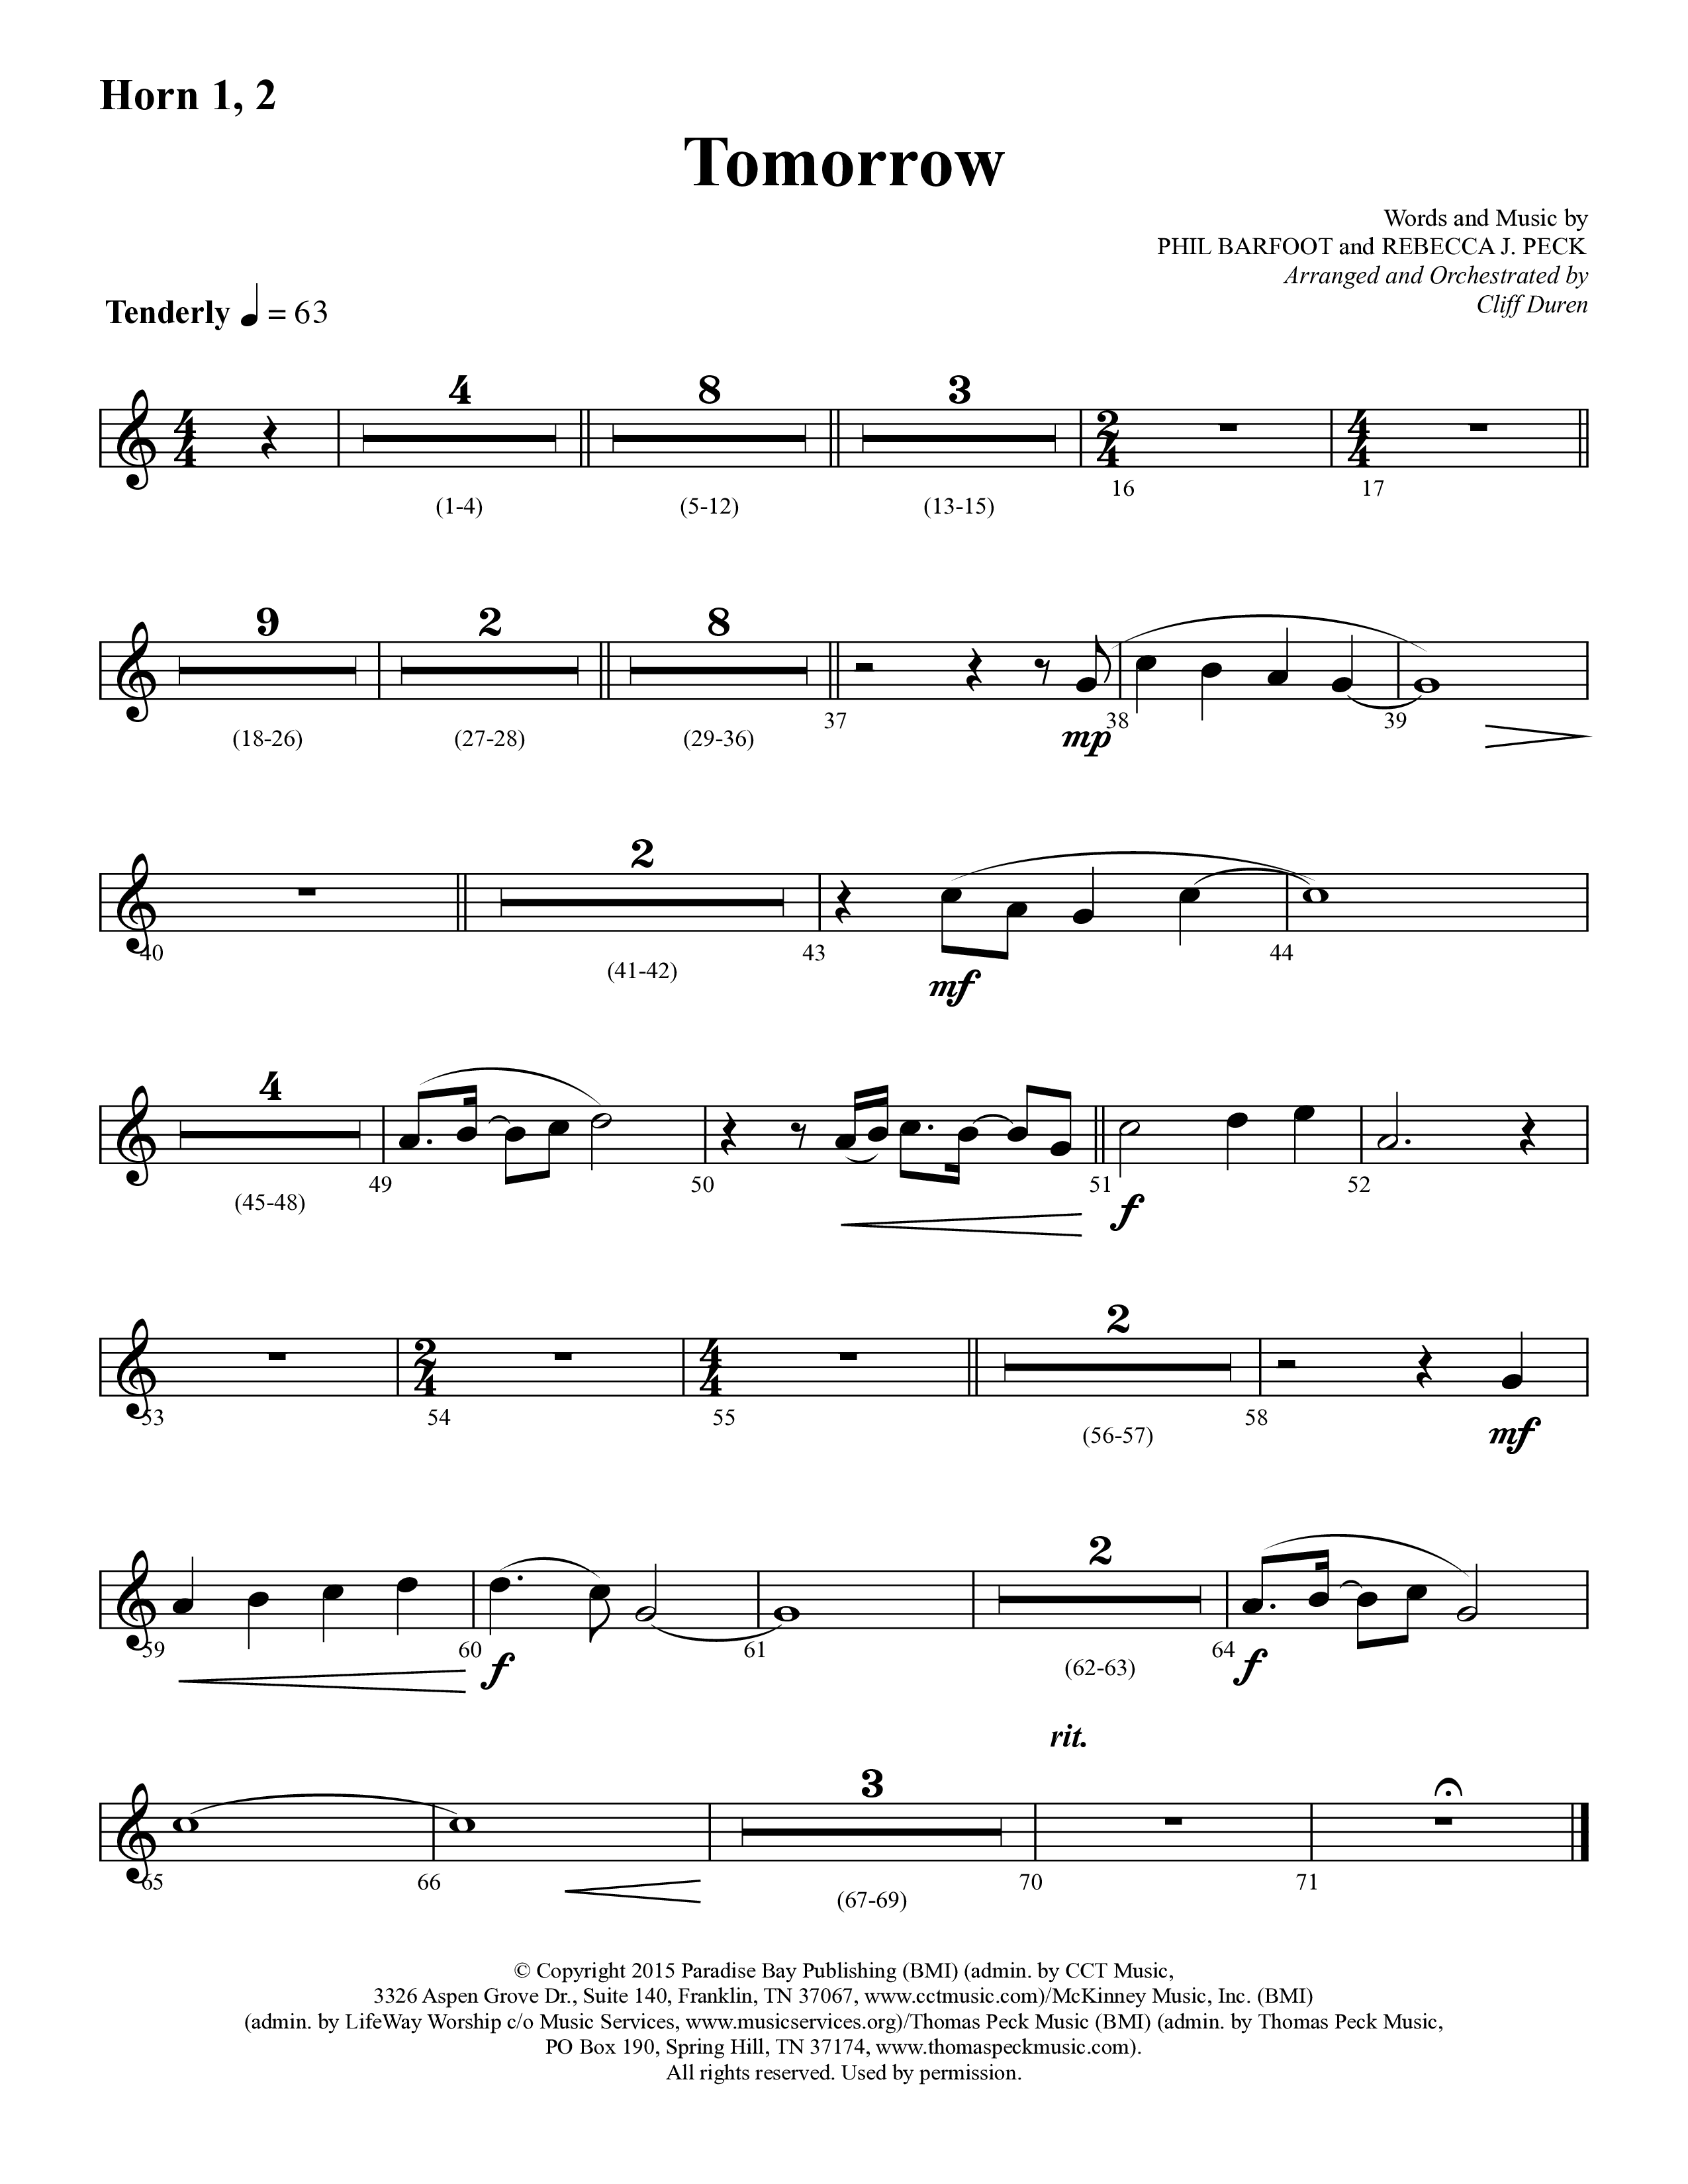 Tomorrow (Choral Anthem SATB) French Horn 1/2 (Lifeway Choral / Arr. Cliff Duren)